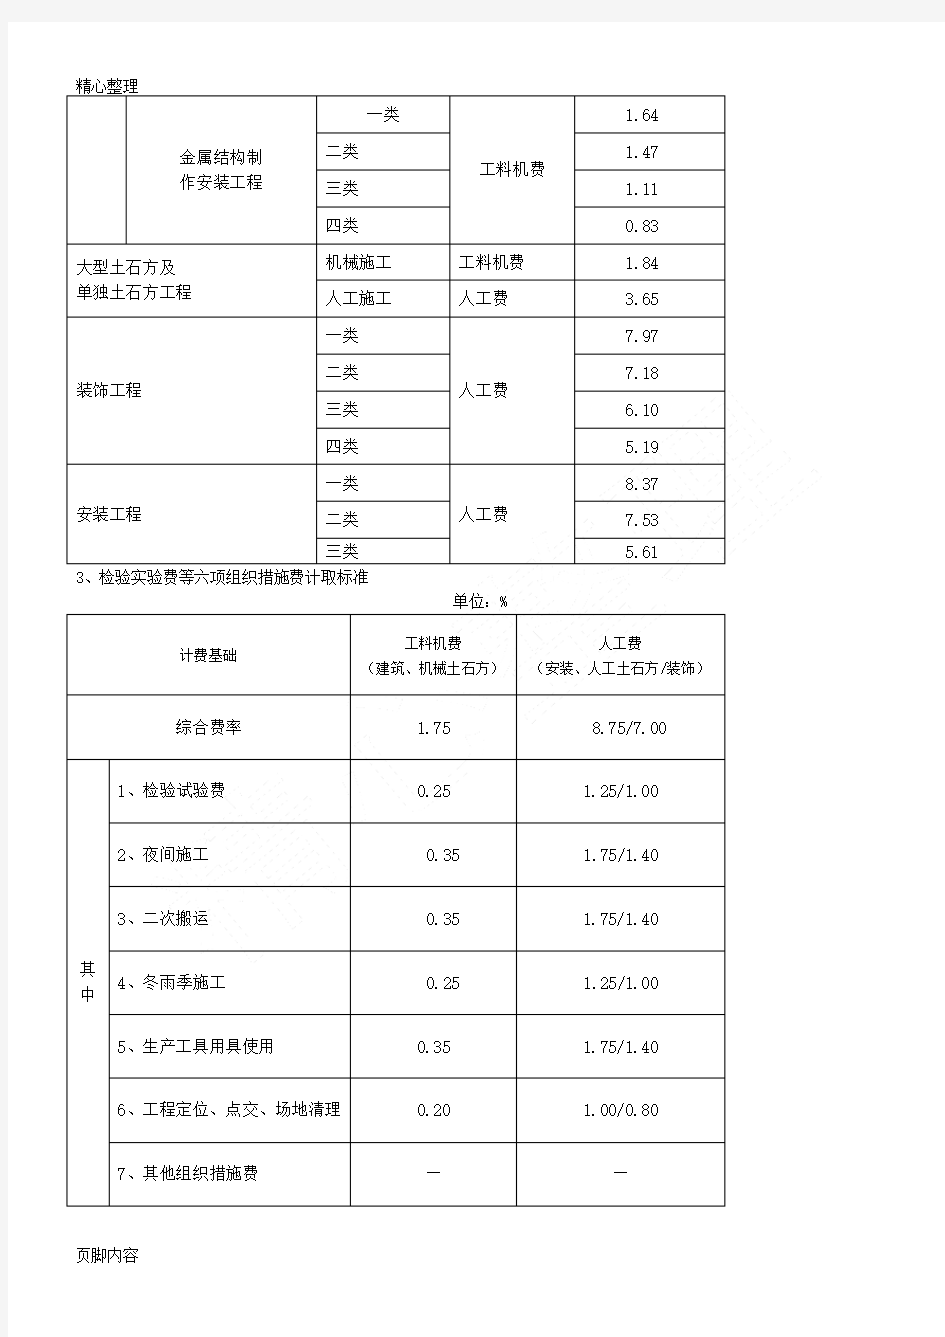 江西省建筑安装工程费用定额(2004年版)